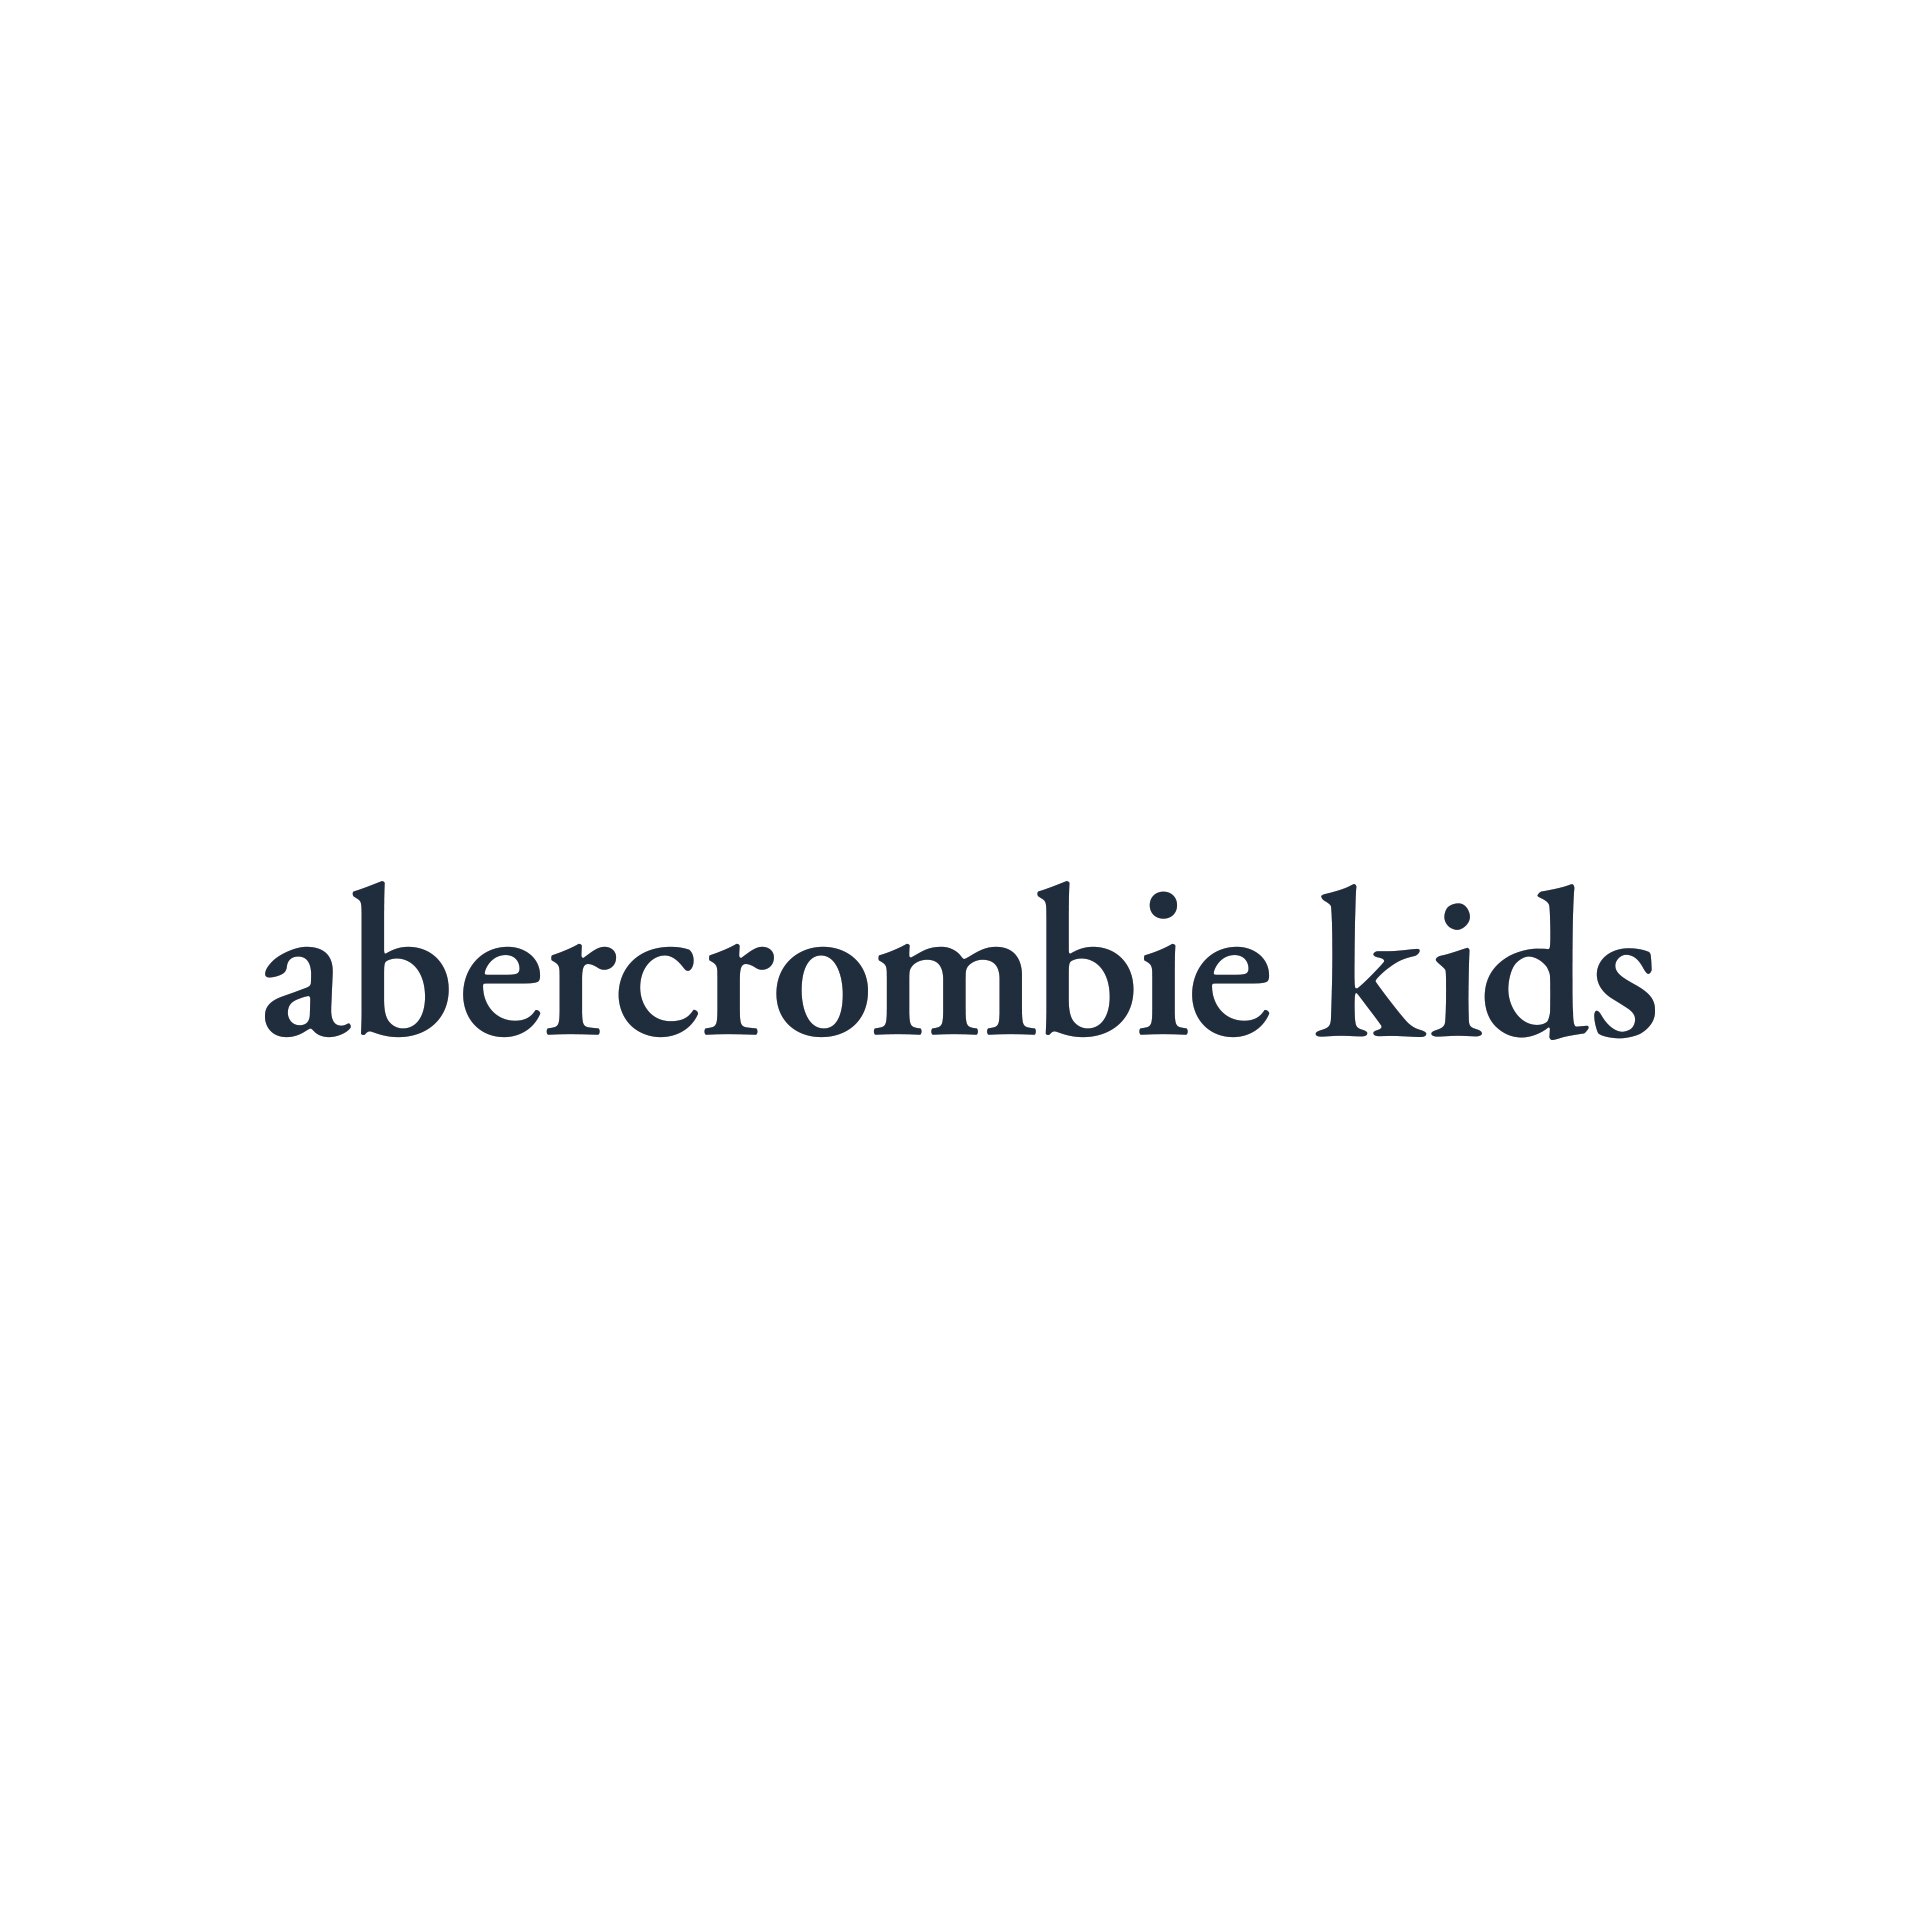 abercrombie kids galleria